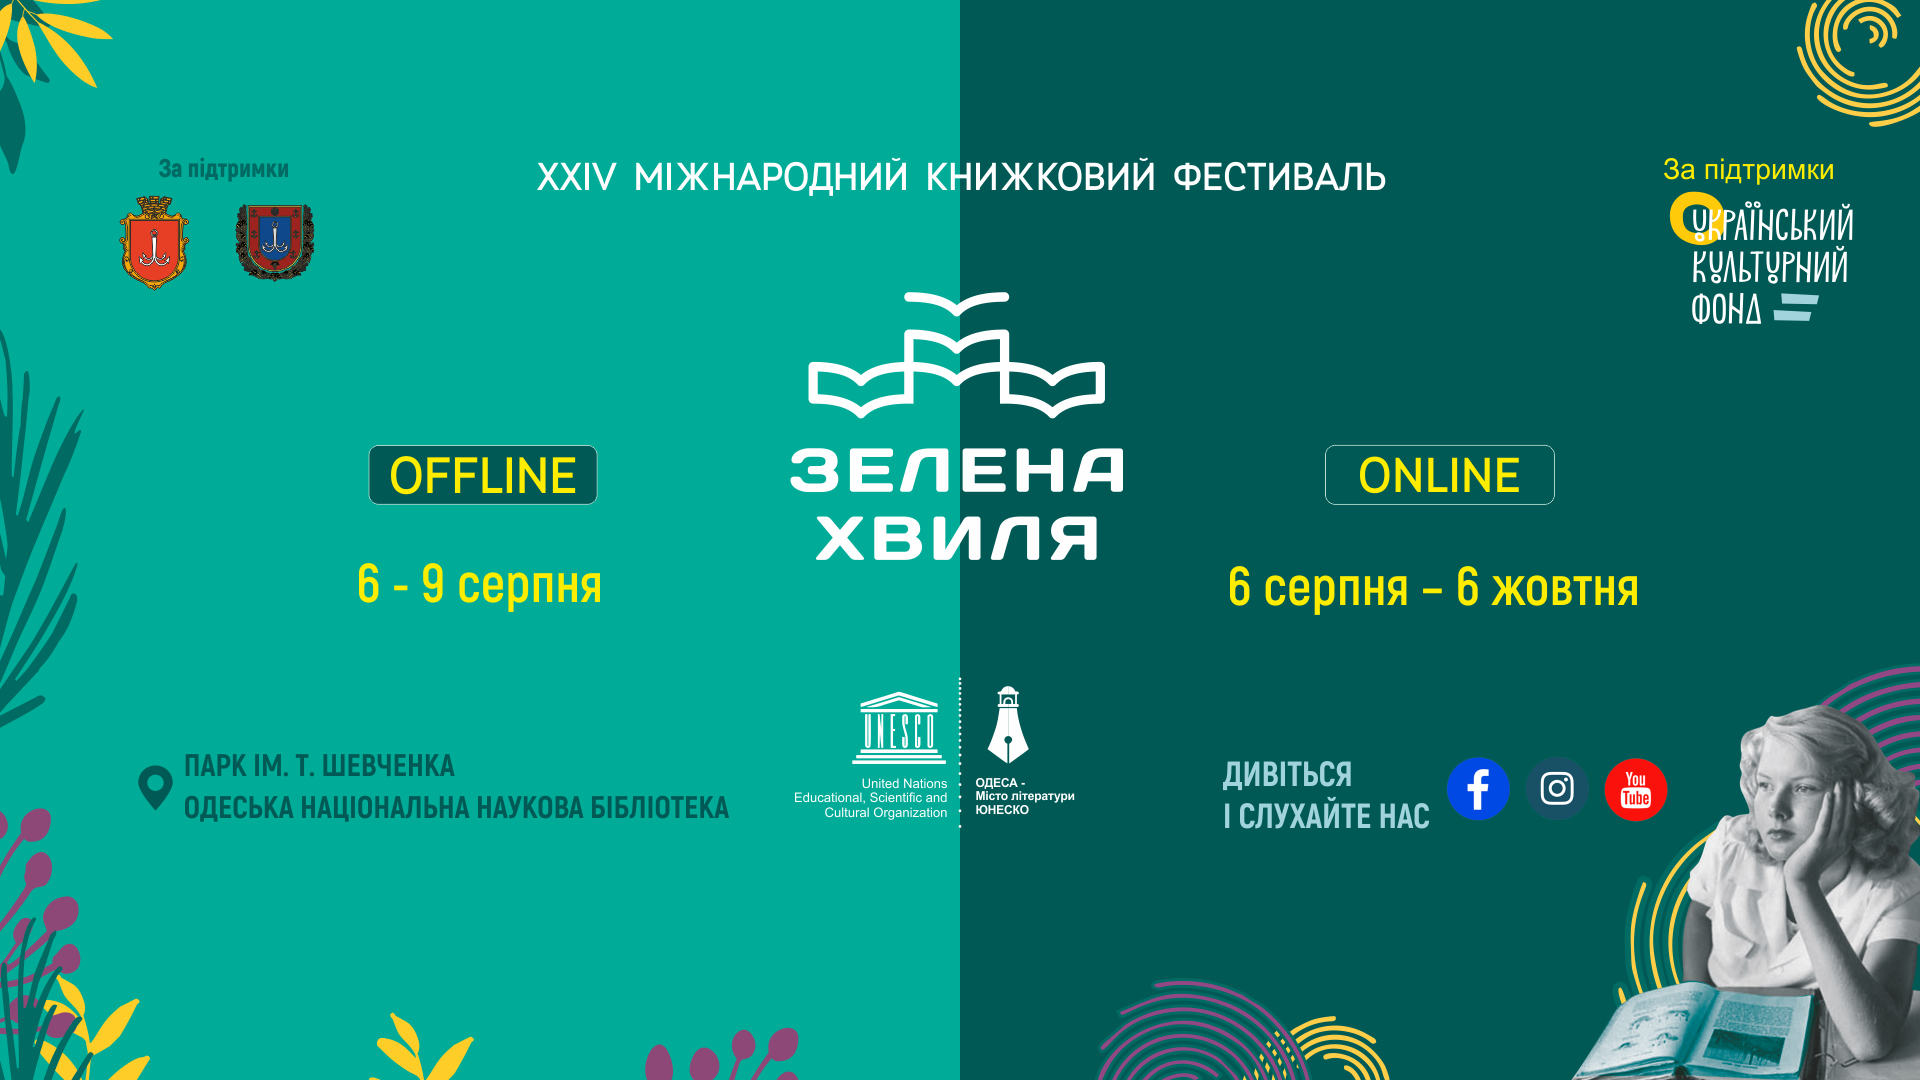 XXIV міжнародний книжковий фестиваль «Зелена хвиля» у 2020 році проводиться в офлайн і в онлайн форматах.